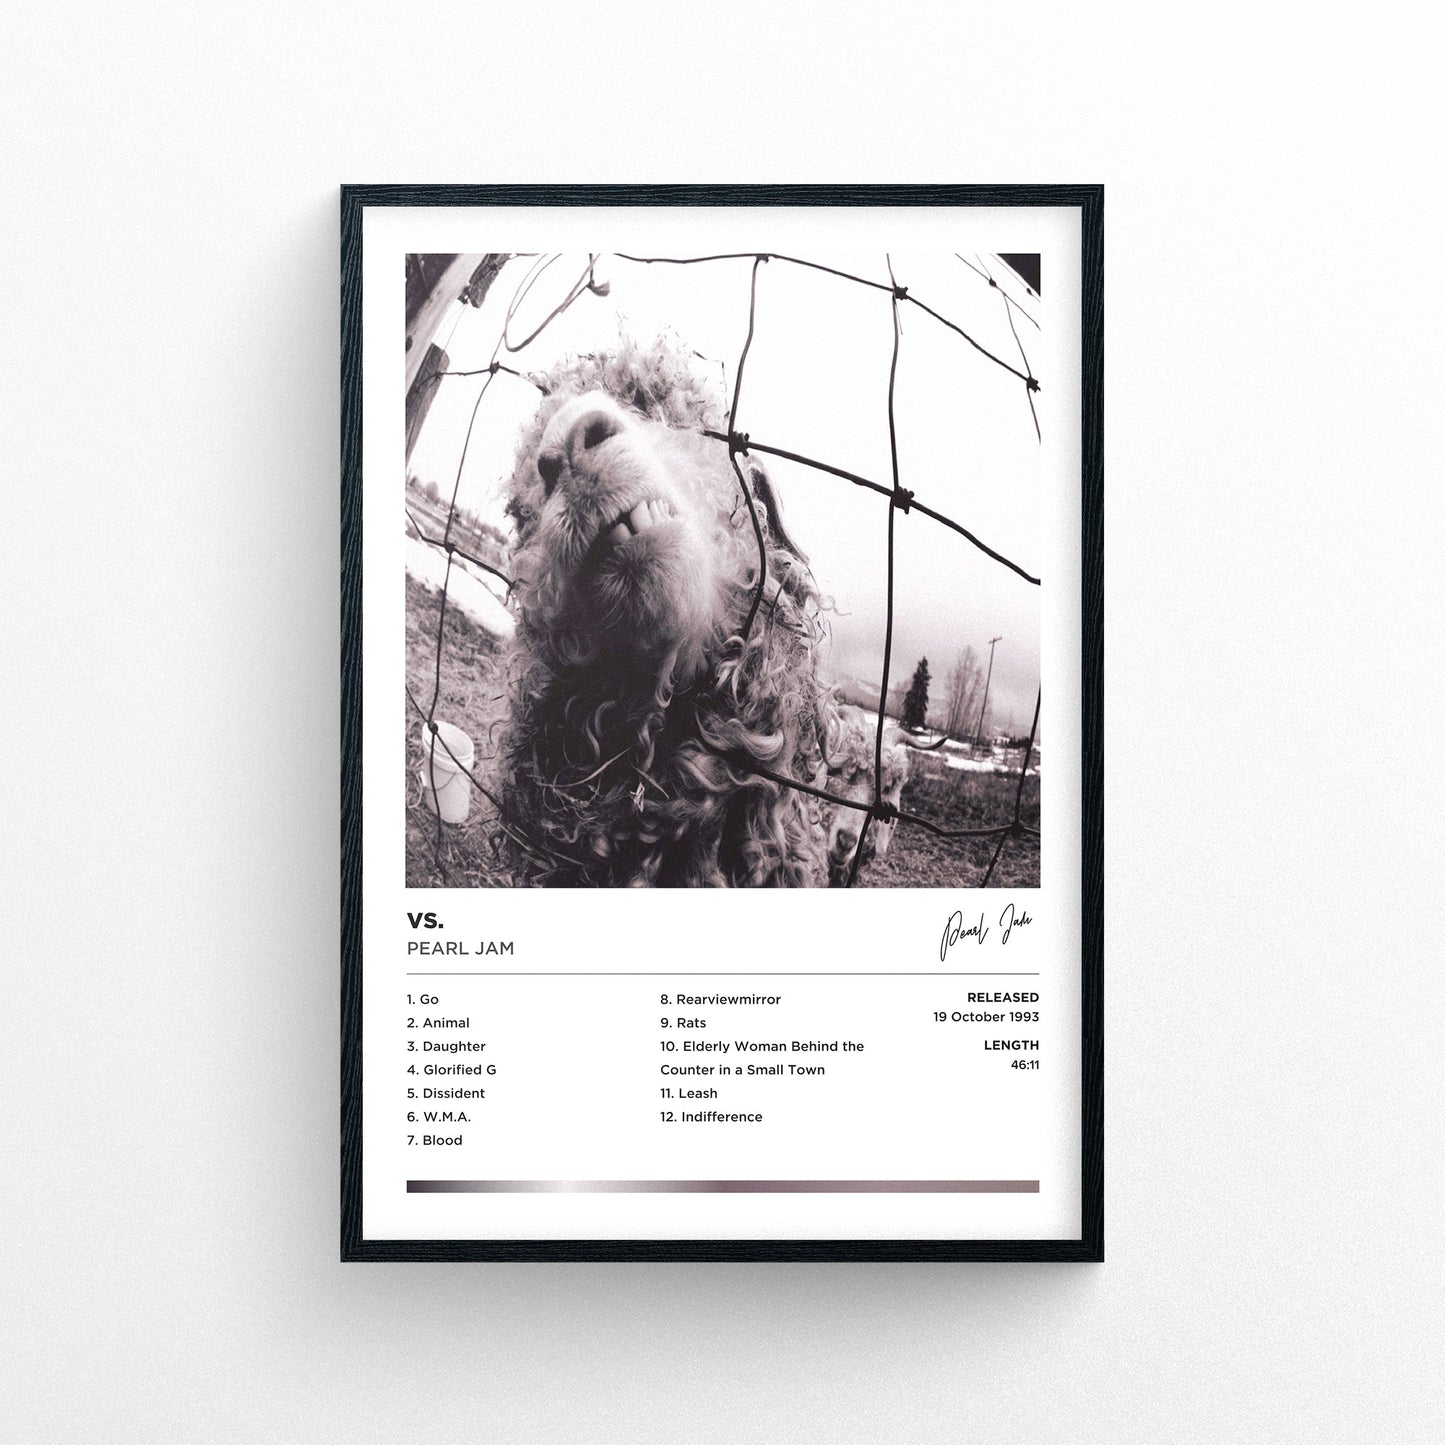 Pearl Jam - Vs. Framed Poster Print | Polaroid Style | Album Cover Artwork